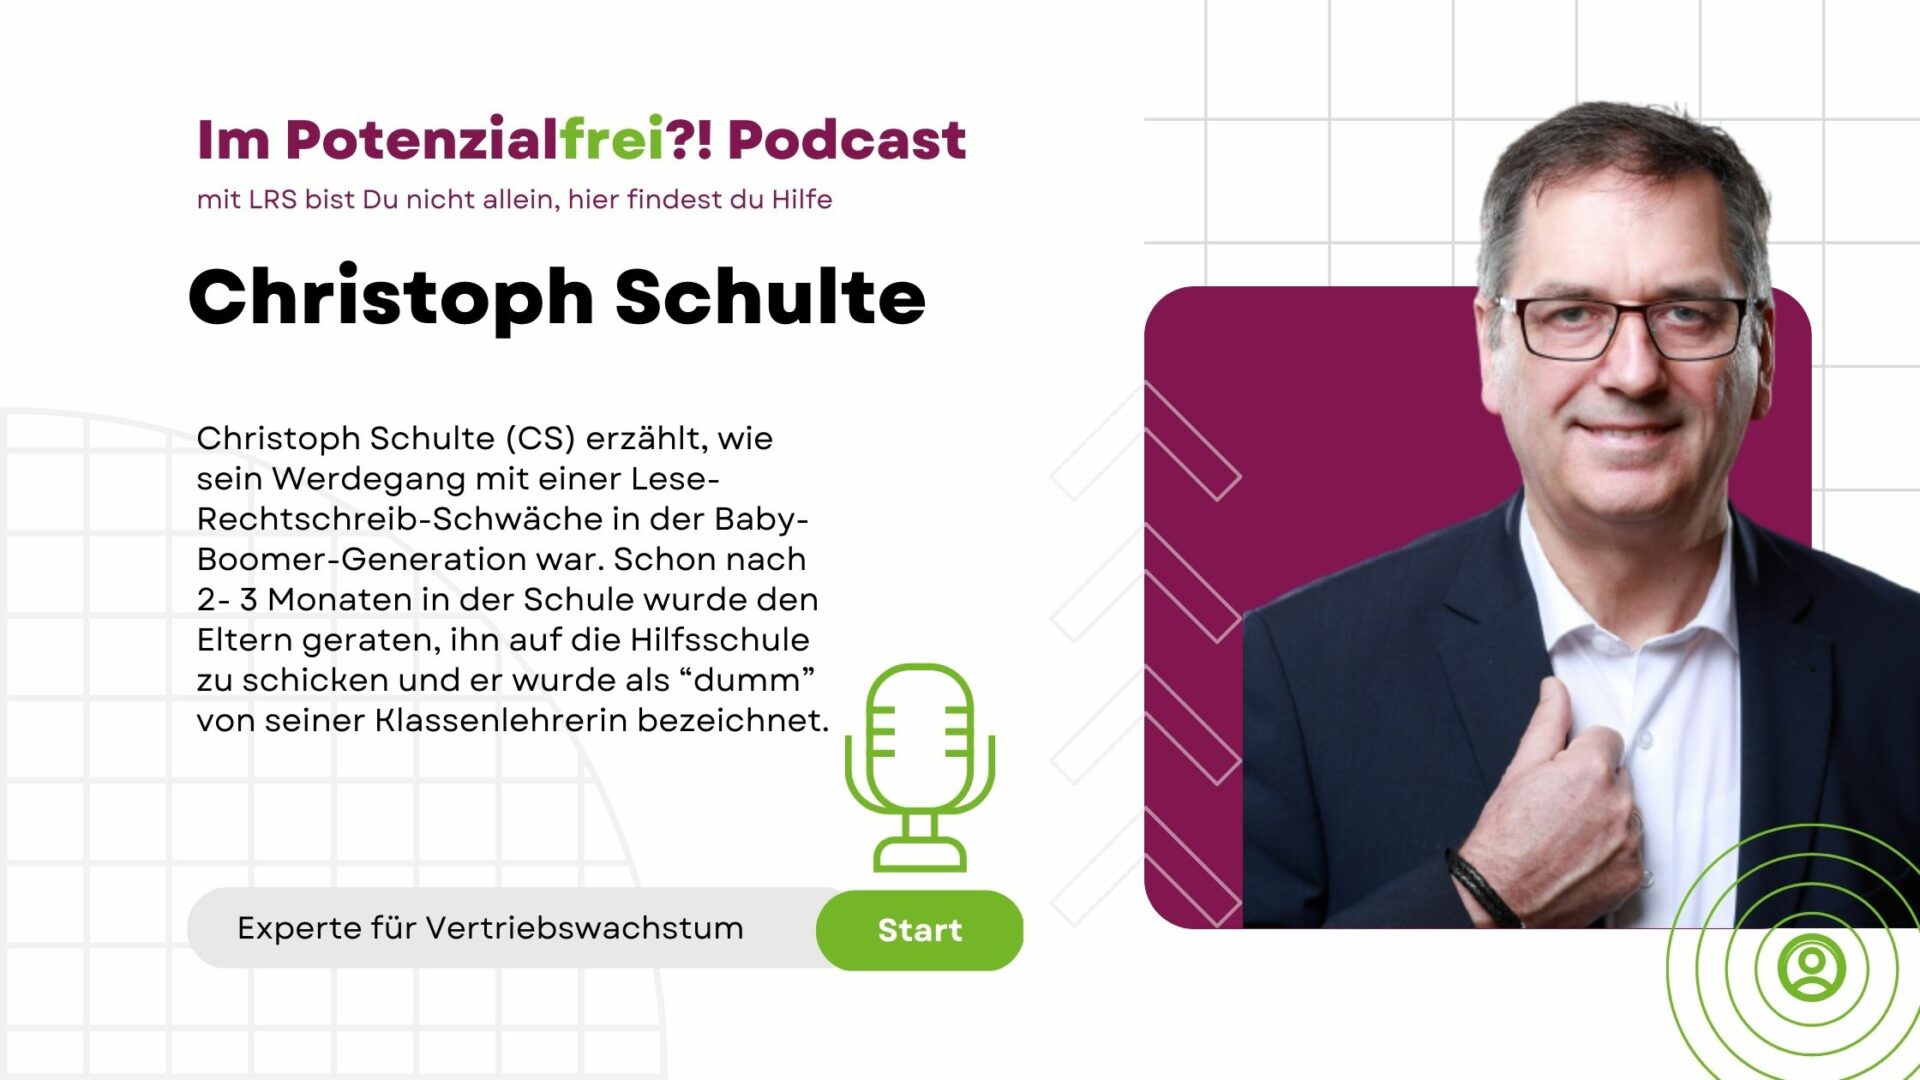 Christoph Schulte, Experte für Vertriebswachstum, im Potenzialfrei! Podcast